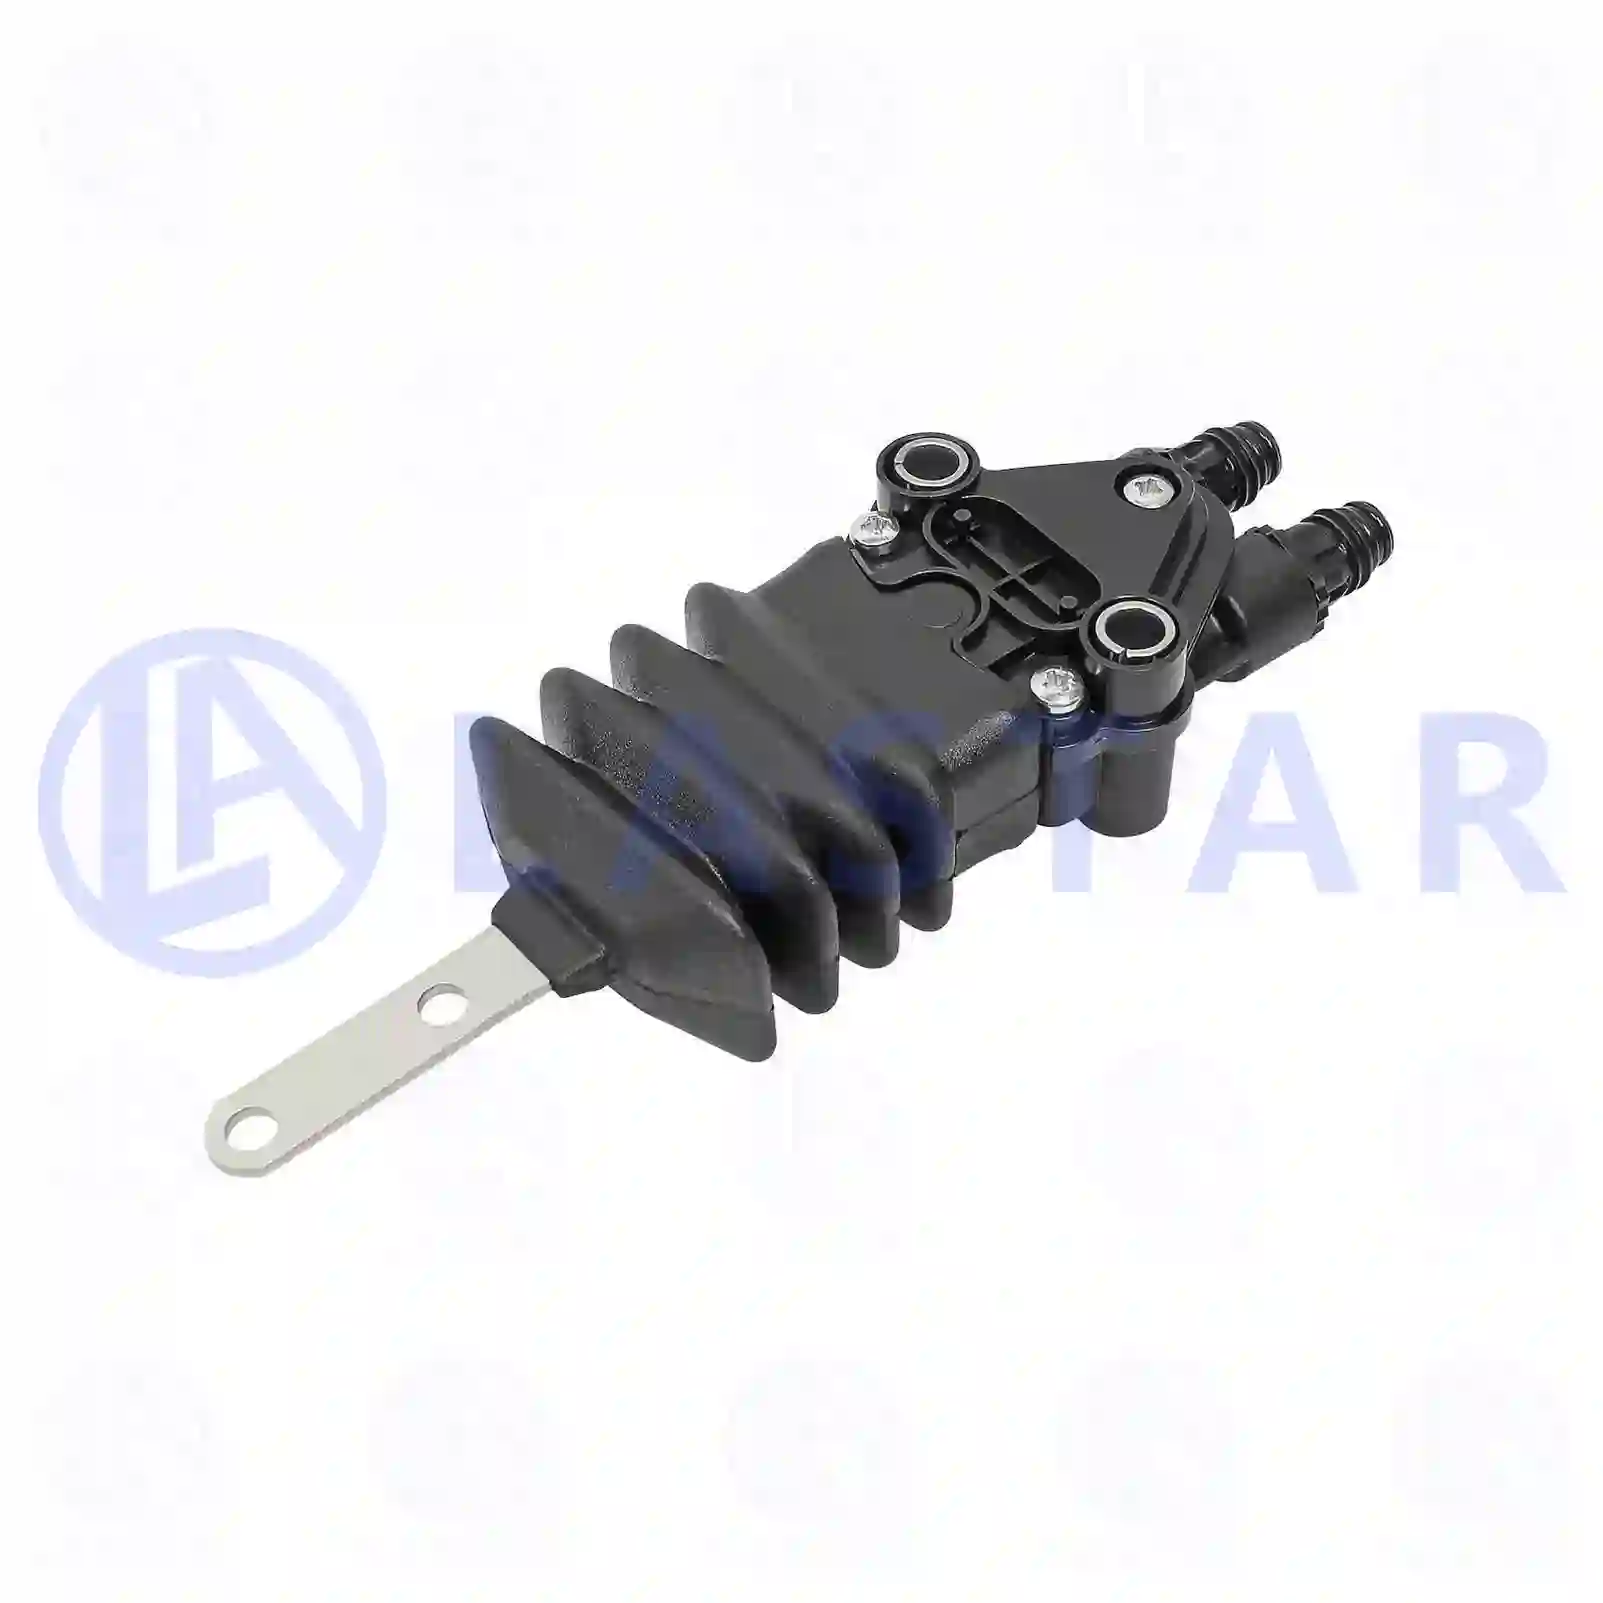 Seat Level valve, la no: 77735833 ,  oem no:2093357, 2756140, ZG50853-0008 Lastar Spare Part | Truck Spare Parts, Auotomotive Spare Parts